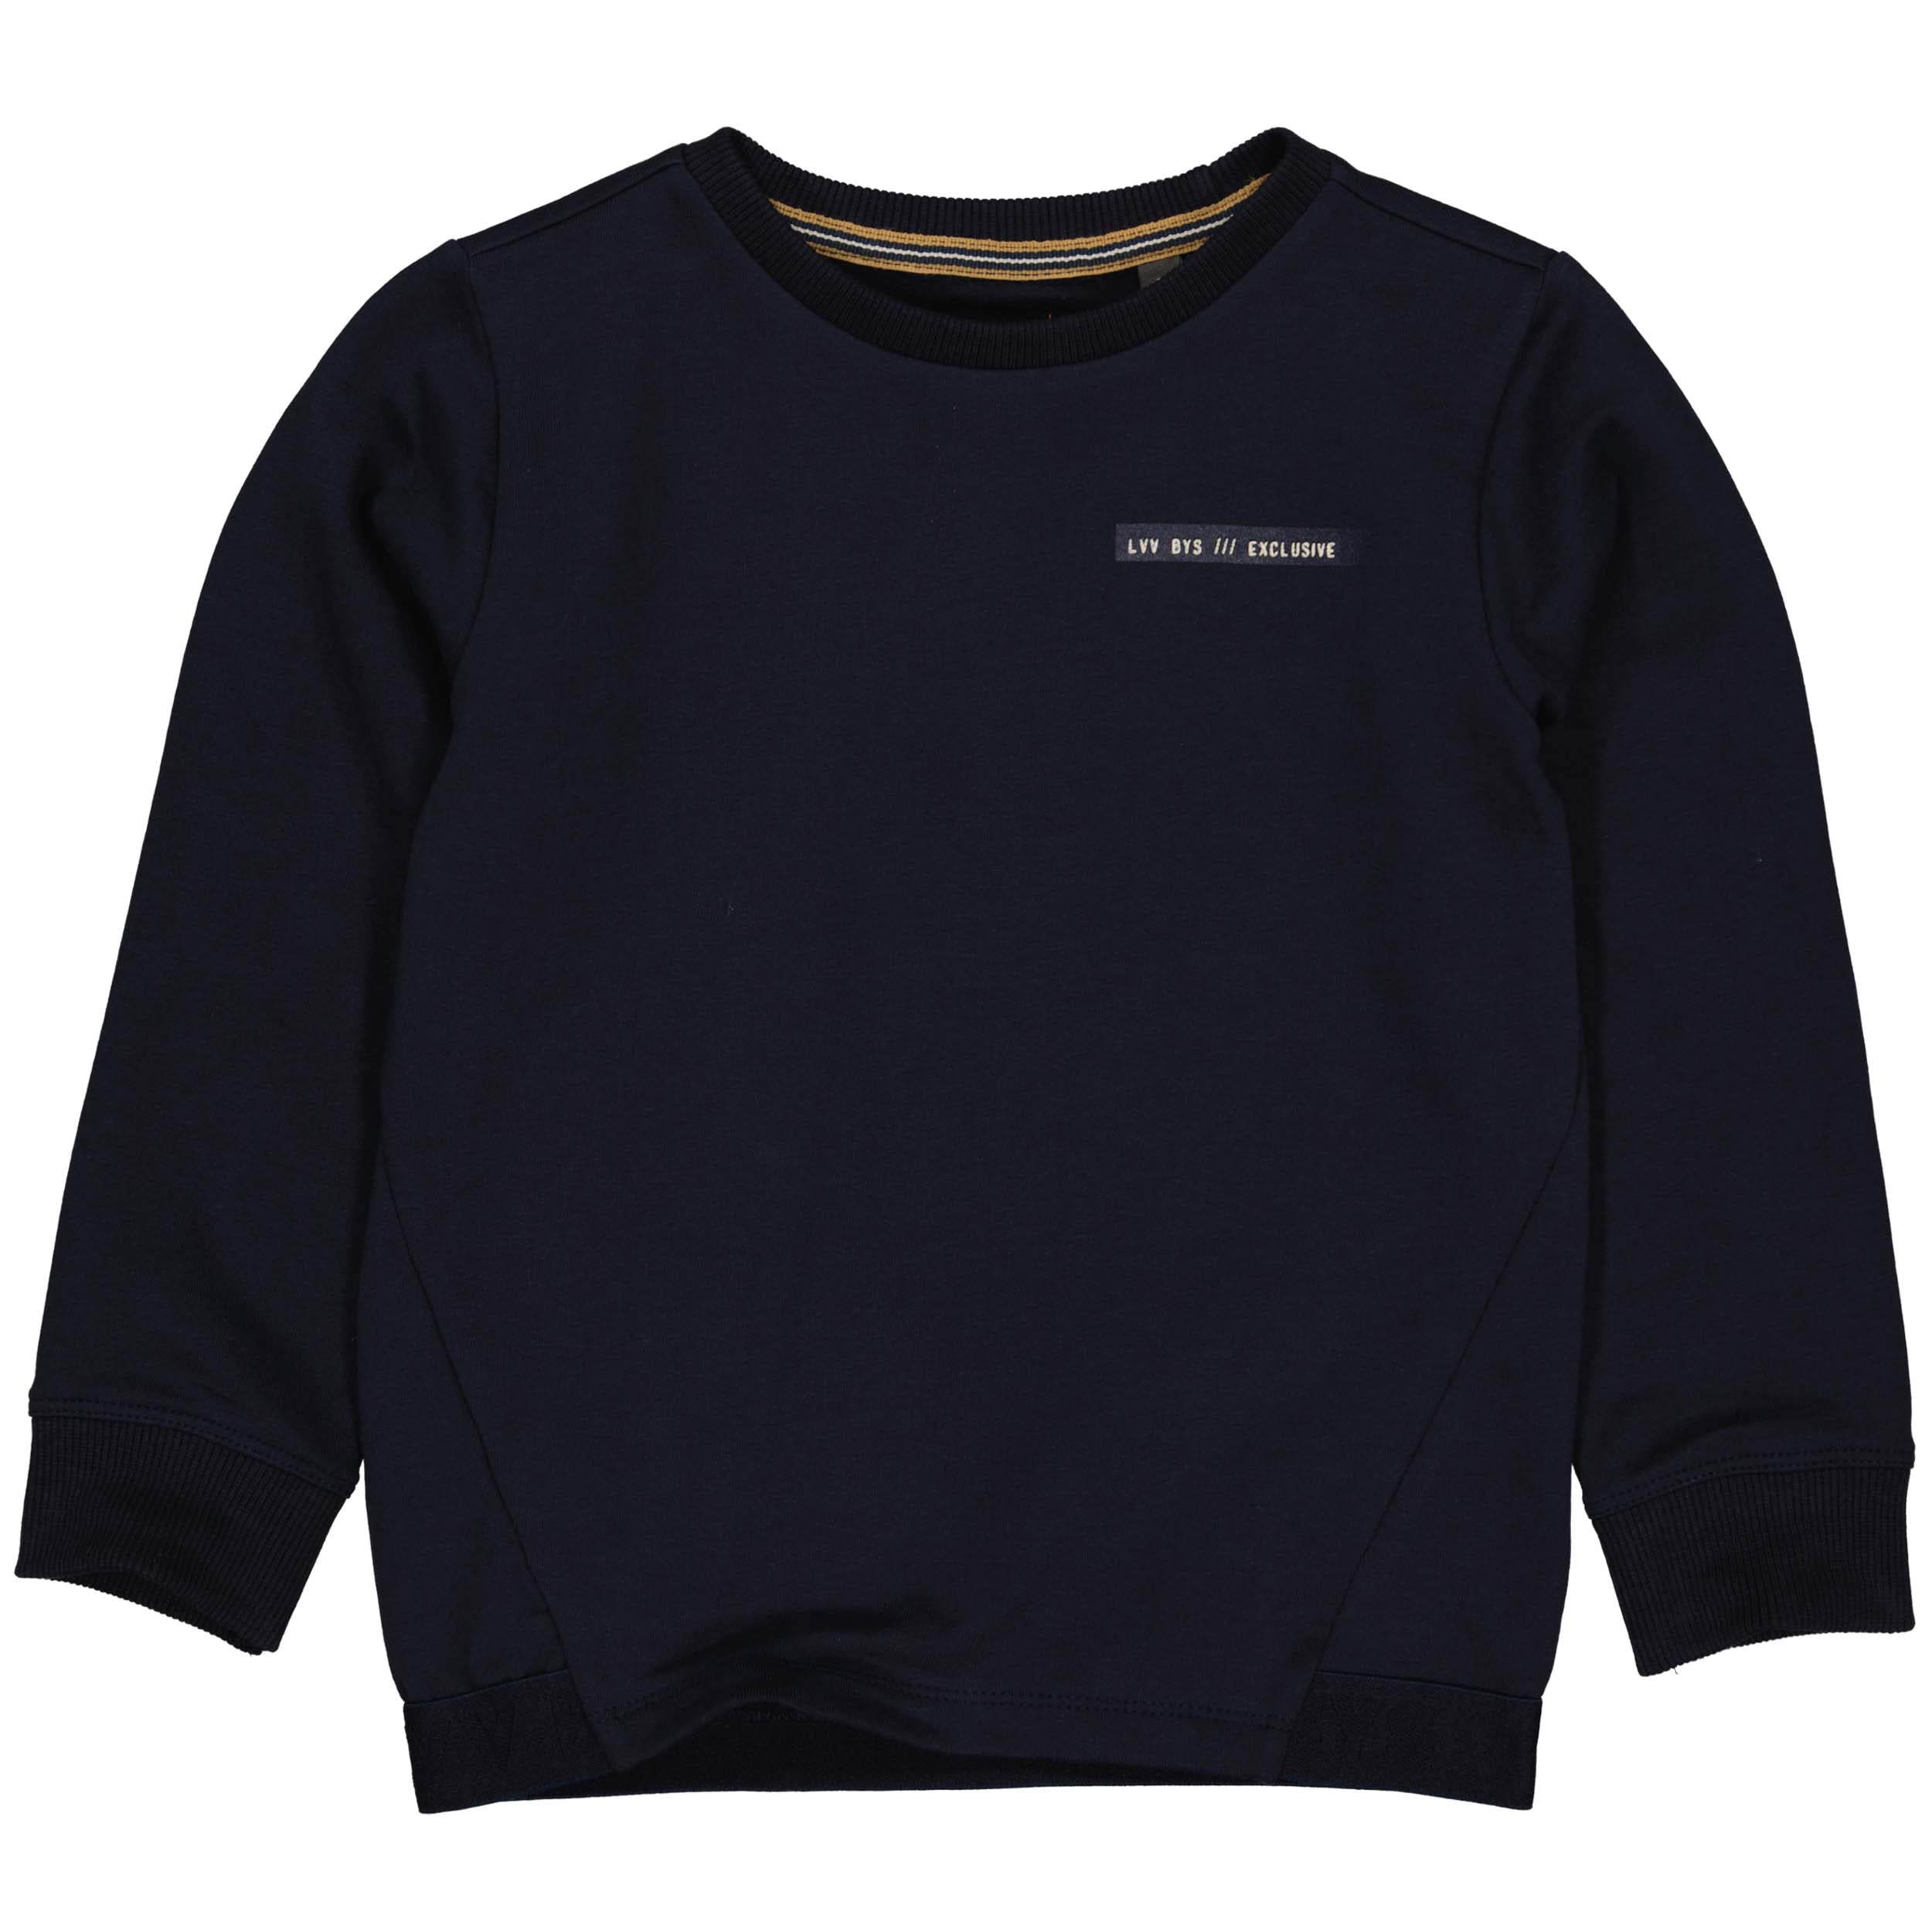 Jongens Sweater BENW221 van Little Levv in de kleur Blue Dark in maat 128.